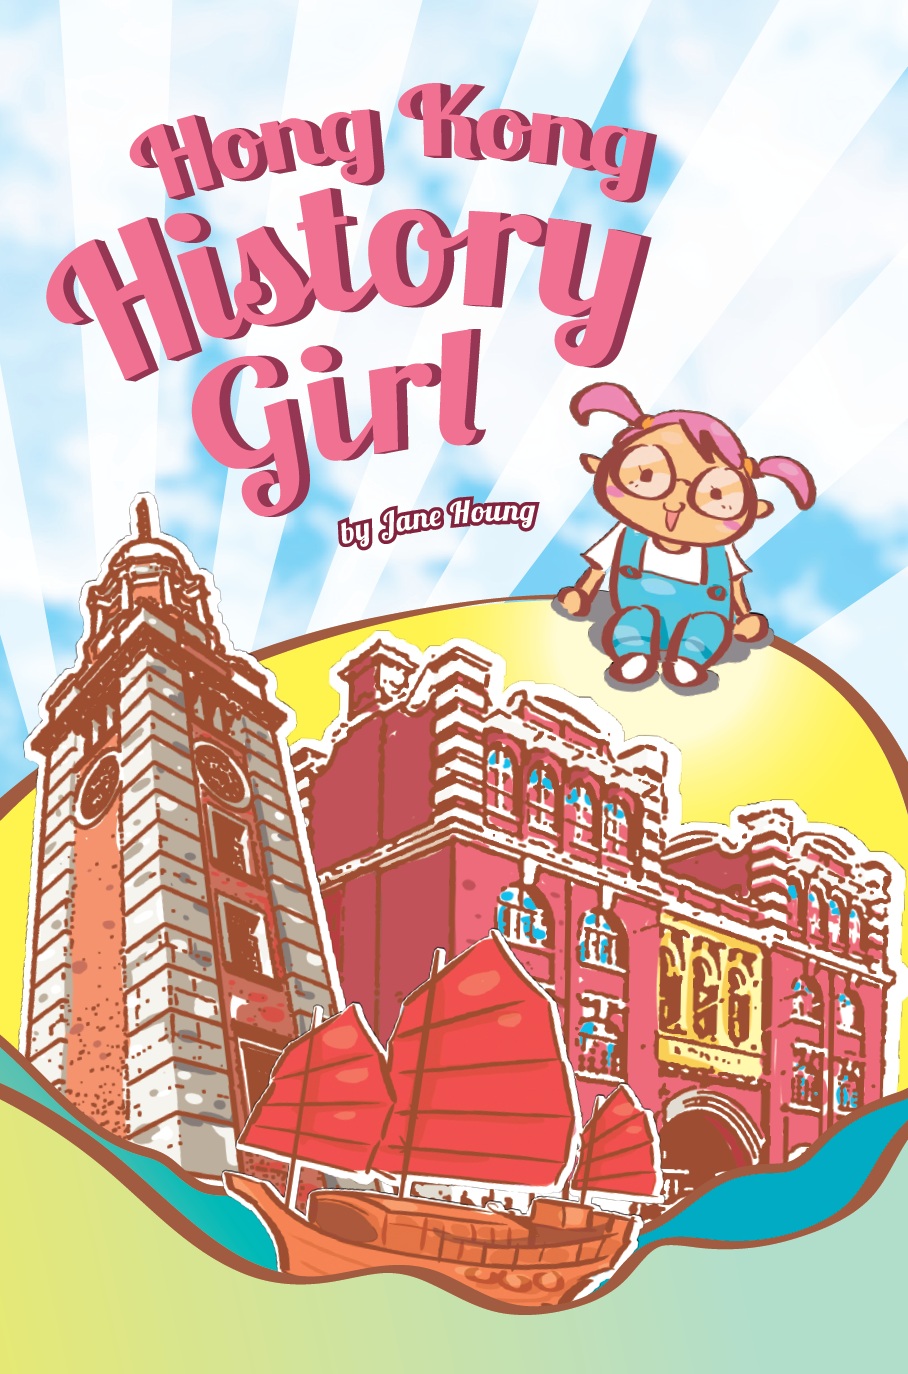 Hong Kong History Girl